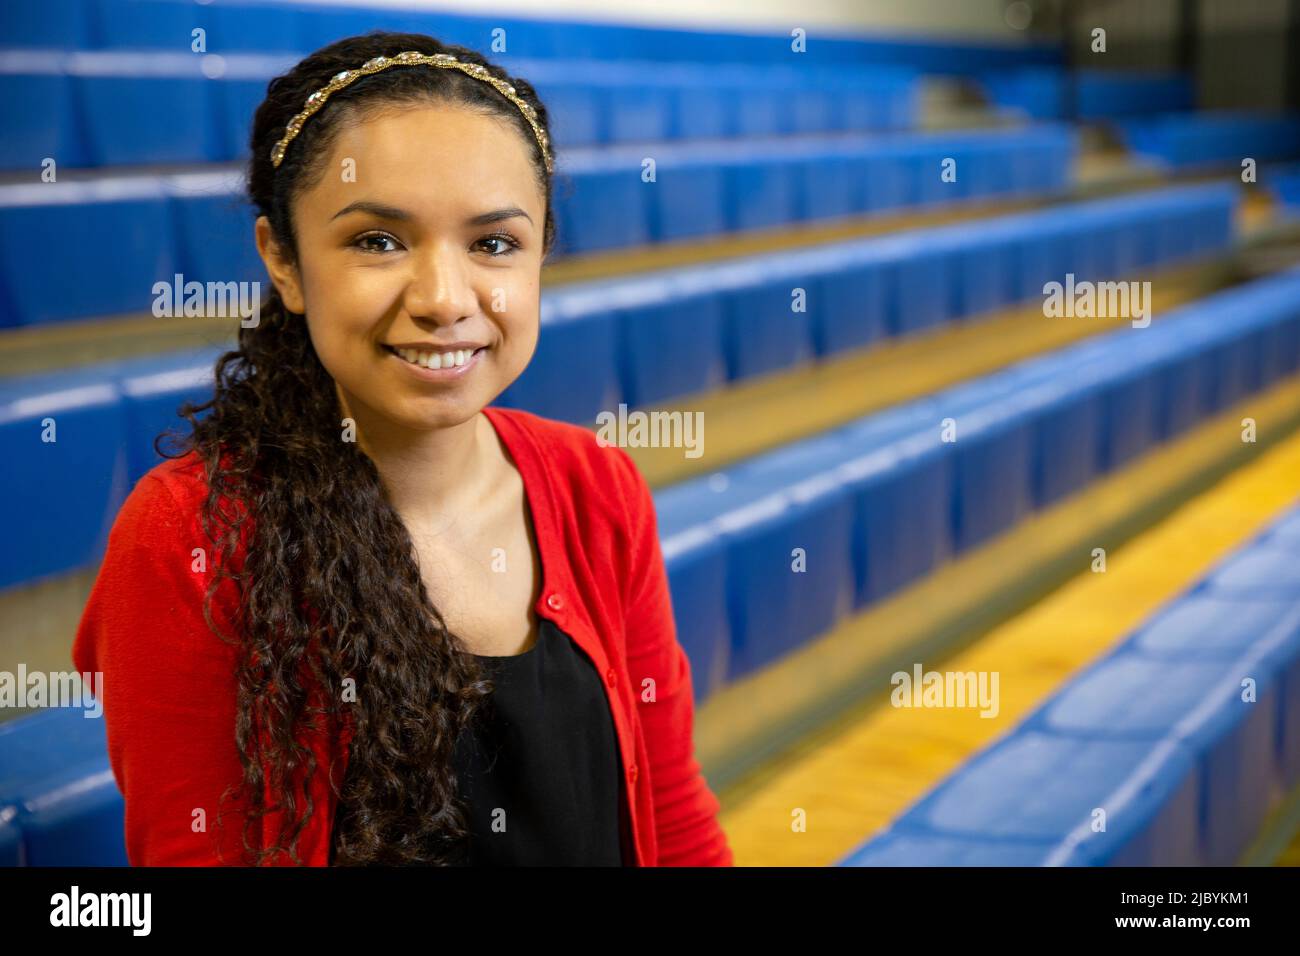 Lächelndes Porträt einer jungen ethnischen Frau, die auf Tribünen in der Turnhalle sitzt Stockfoto